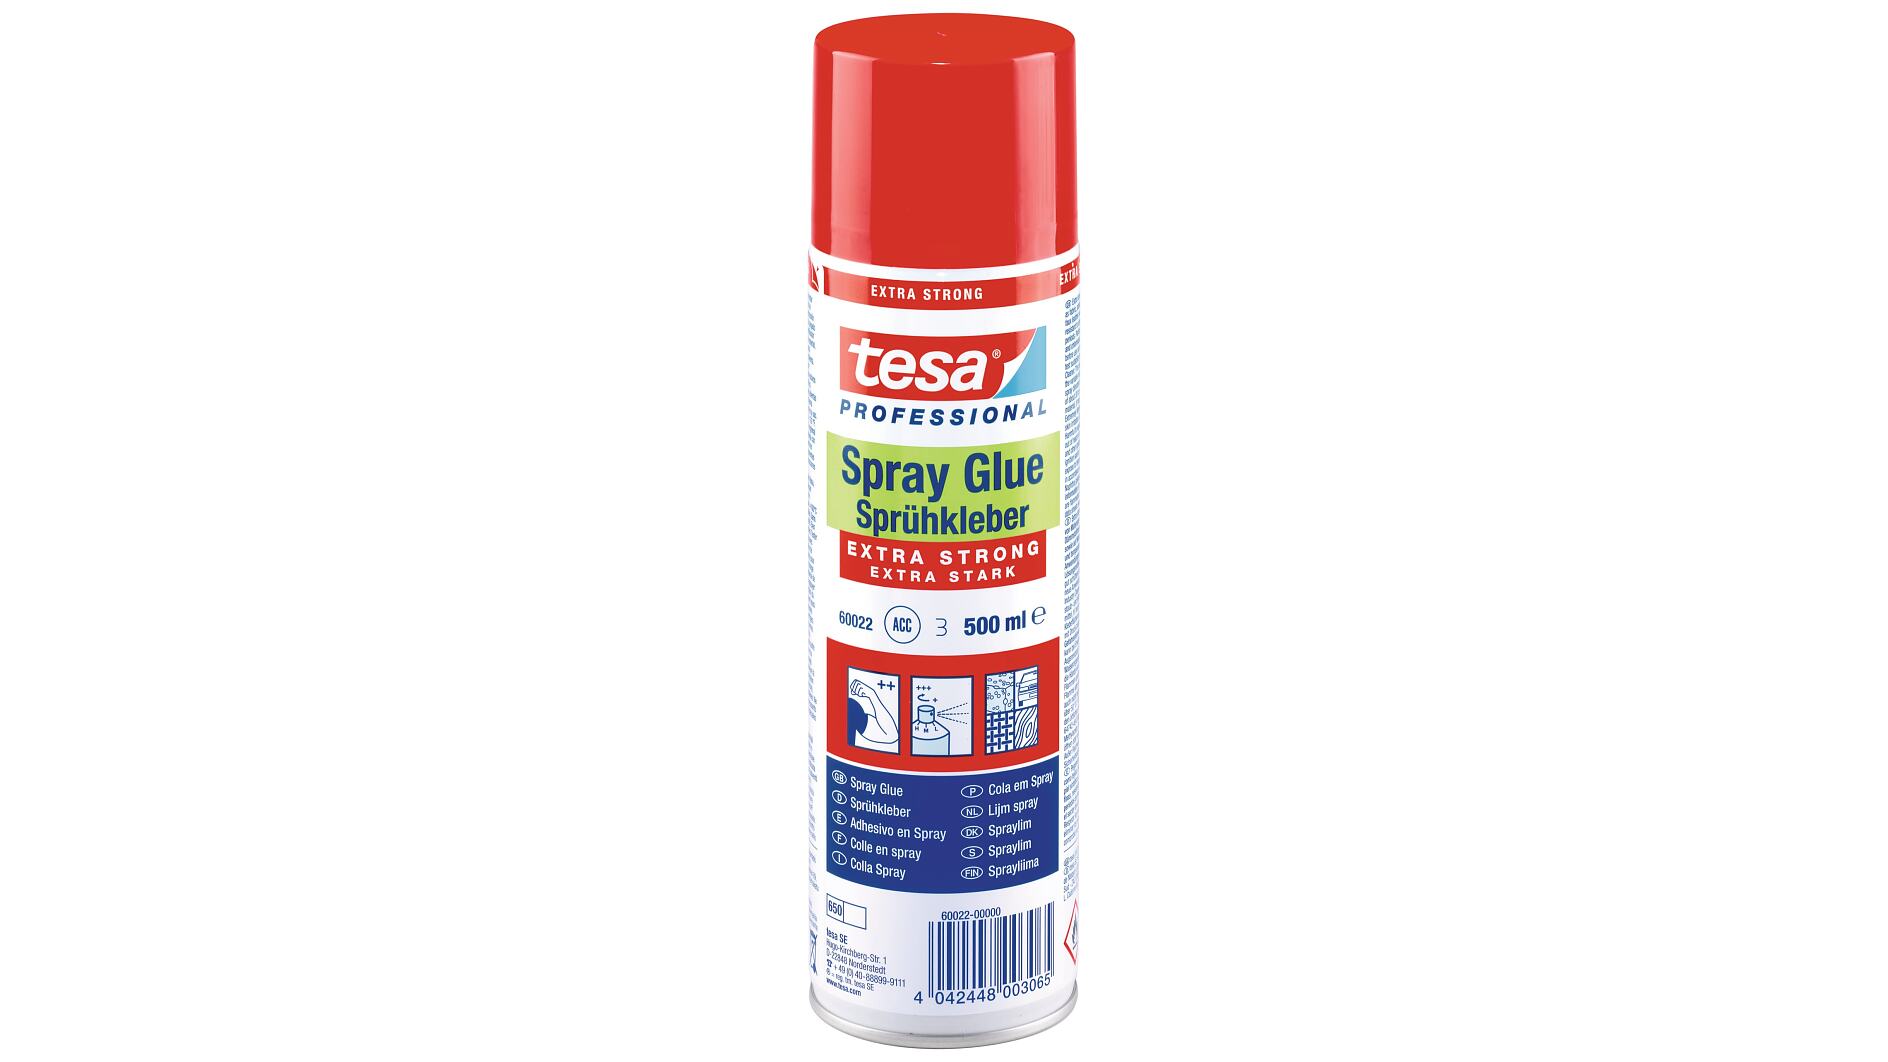 Heavy-Duty Spray Adhesive - Heat Shieldings